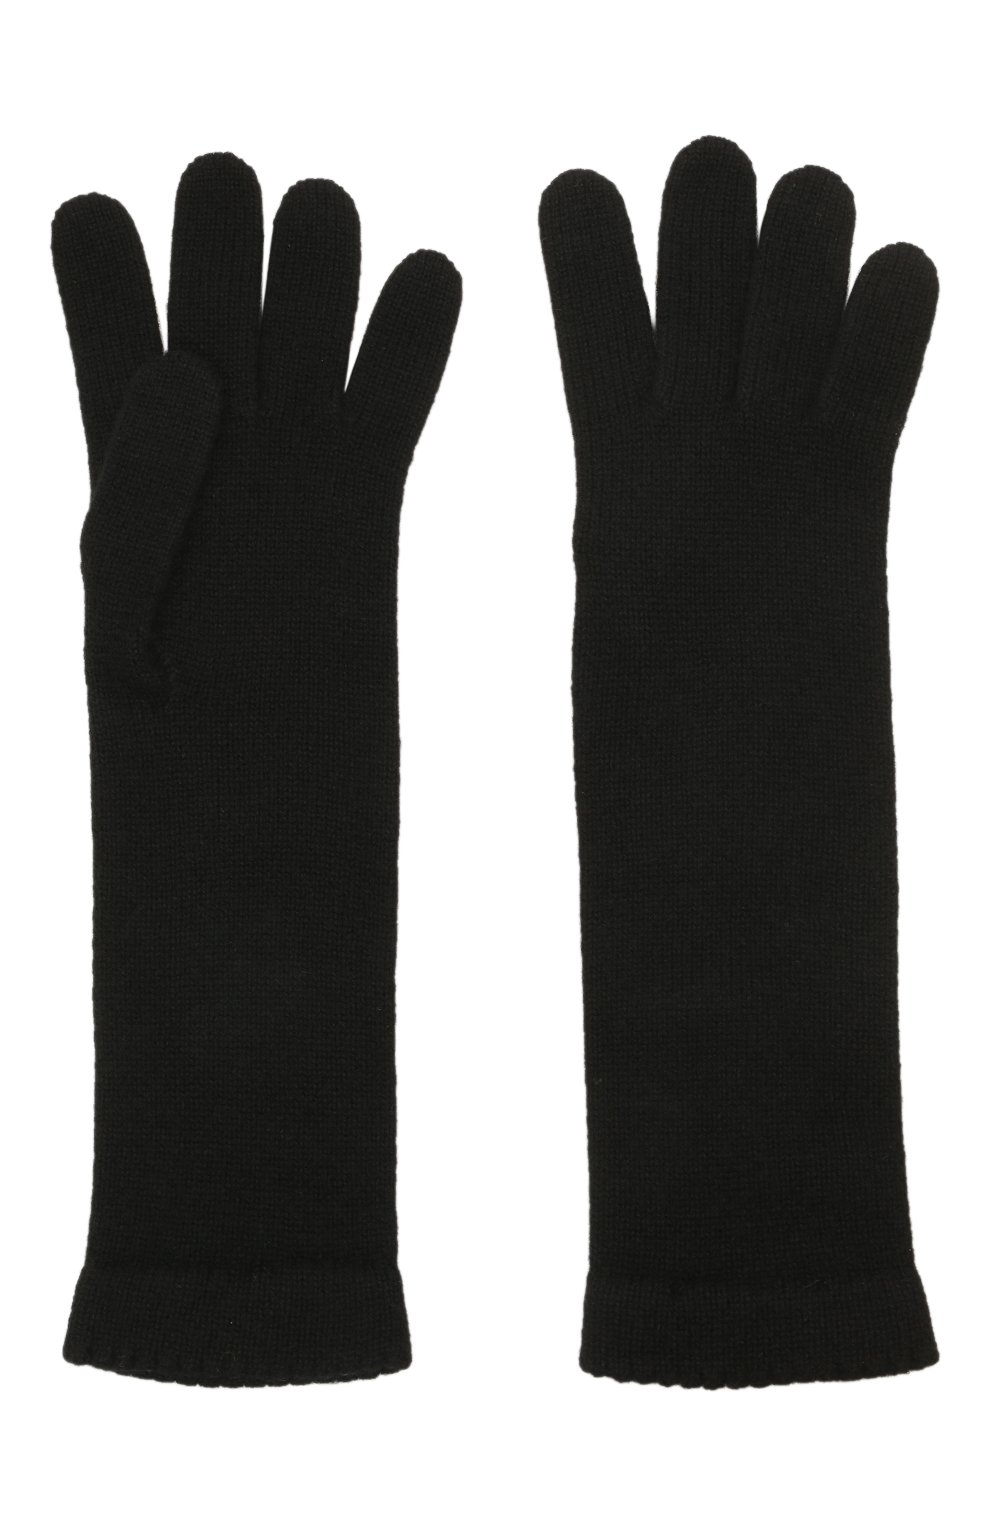 Женские кашемировые перчатки INVERNI черного цвета, арт. 3078 GU | Фото 3 (Материал: Текстиль, Кашемир, Шерсть; Кросс-КТ: Т рикотаж)